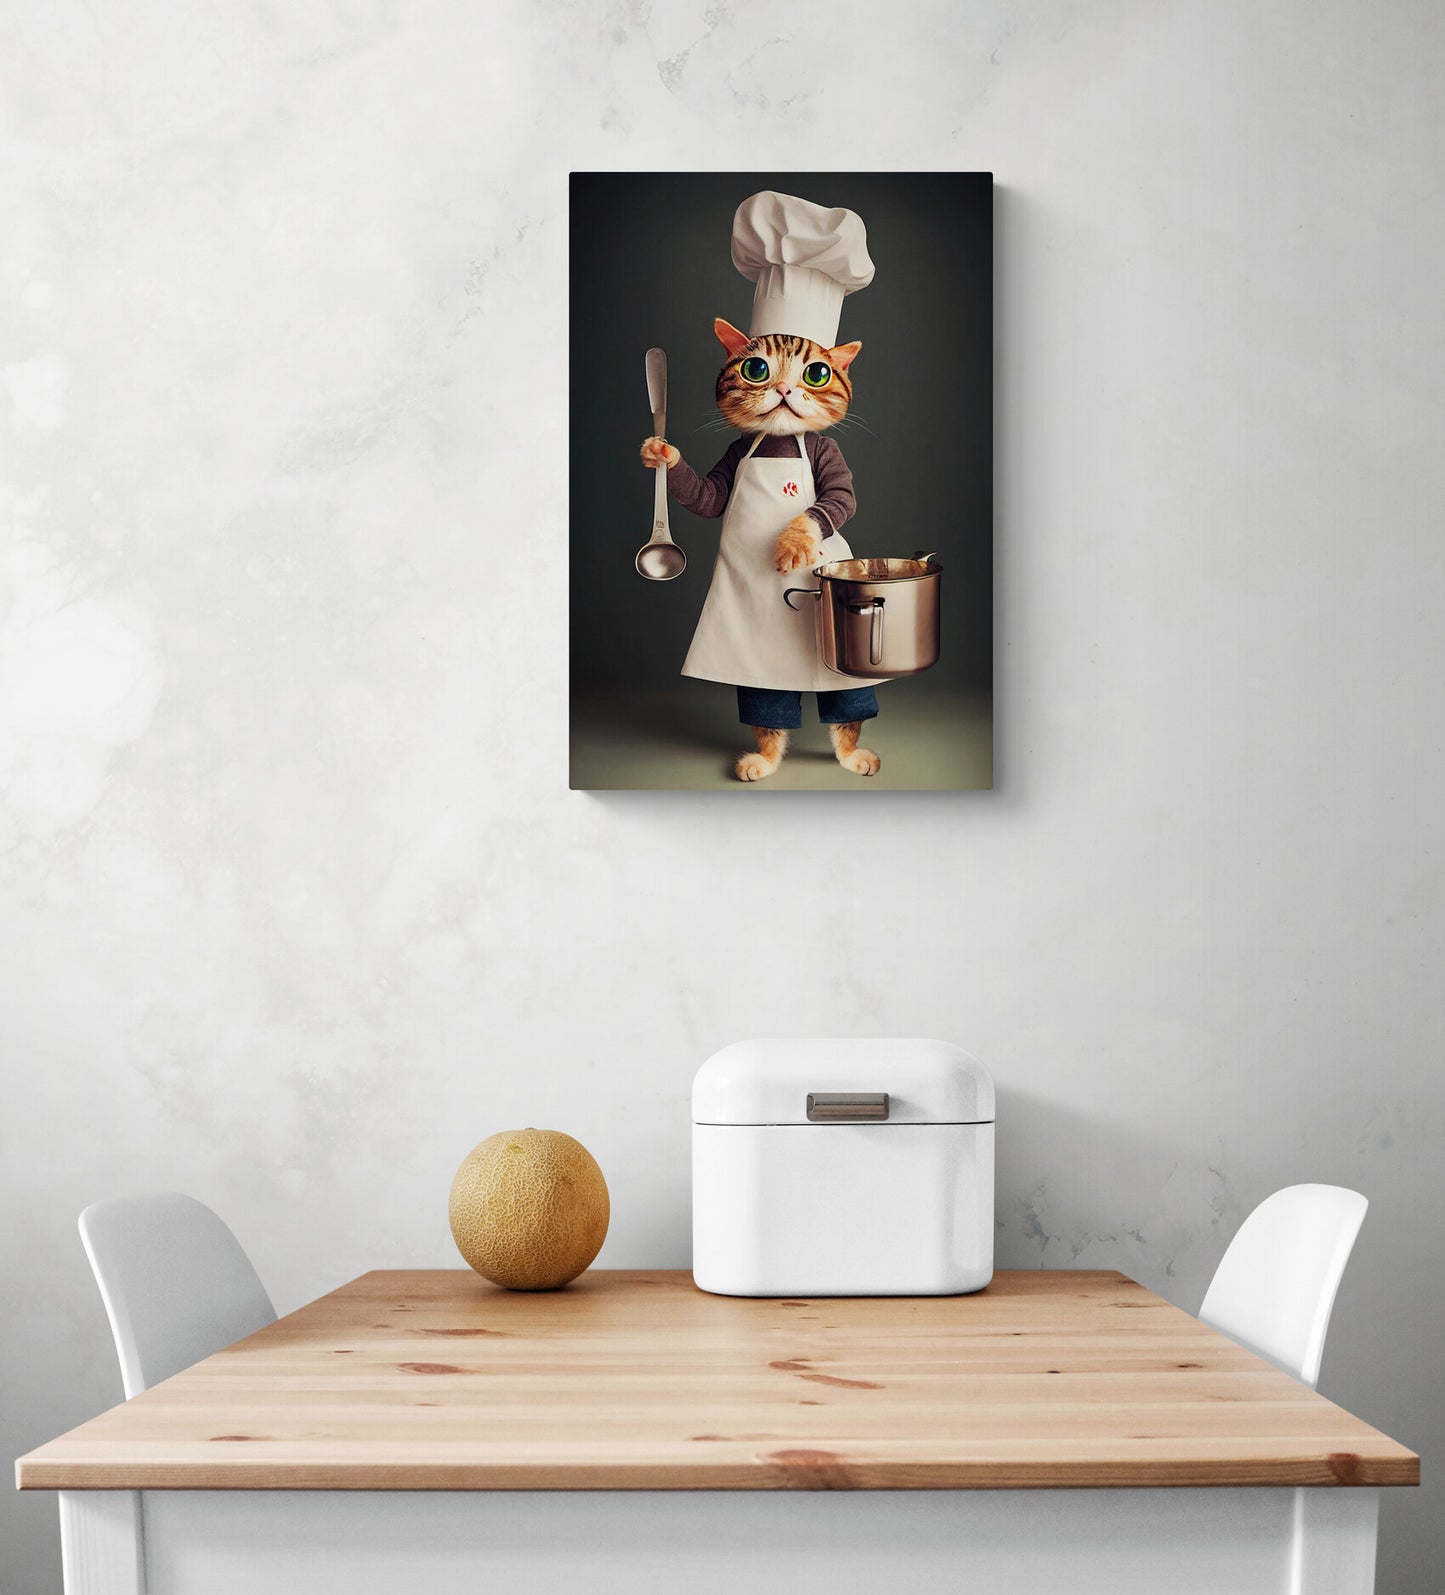 Un tableau cuisine original représentant un gros chat en tenue de chef tenant des ustensiles pour préparer un repas est sur le mur blanc d'une cuisine. Une louche et une casserole sont dans la main du chef. Une table à manger en bois et deux chaises se trouvent en dessous. Une corbeille à pain en métal et un melon sont posés dessus